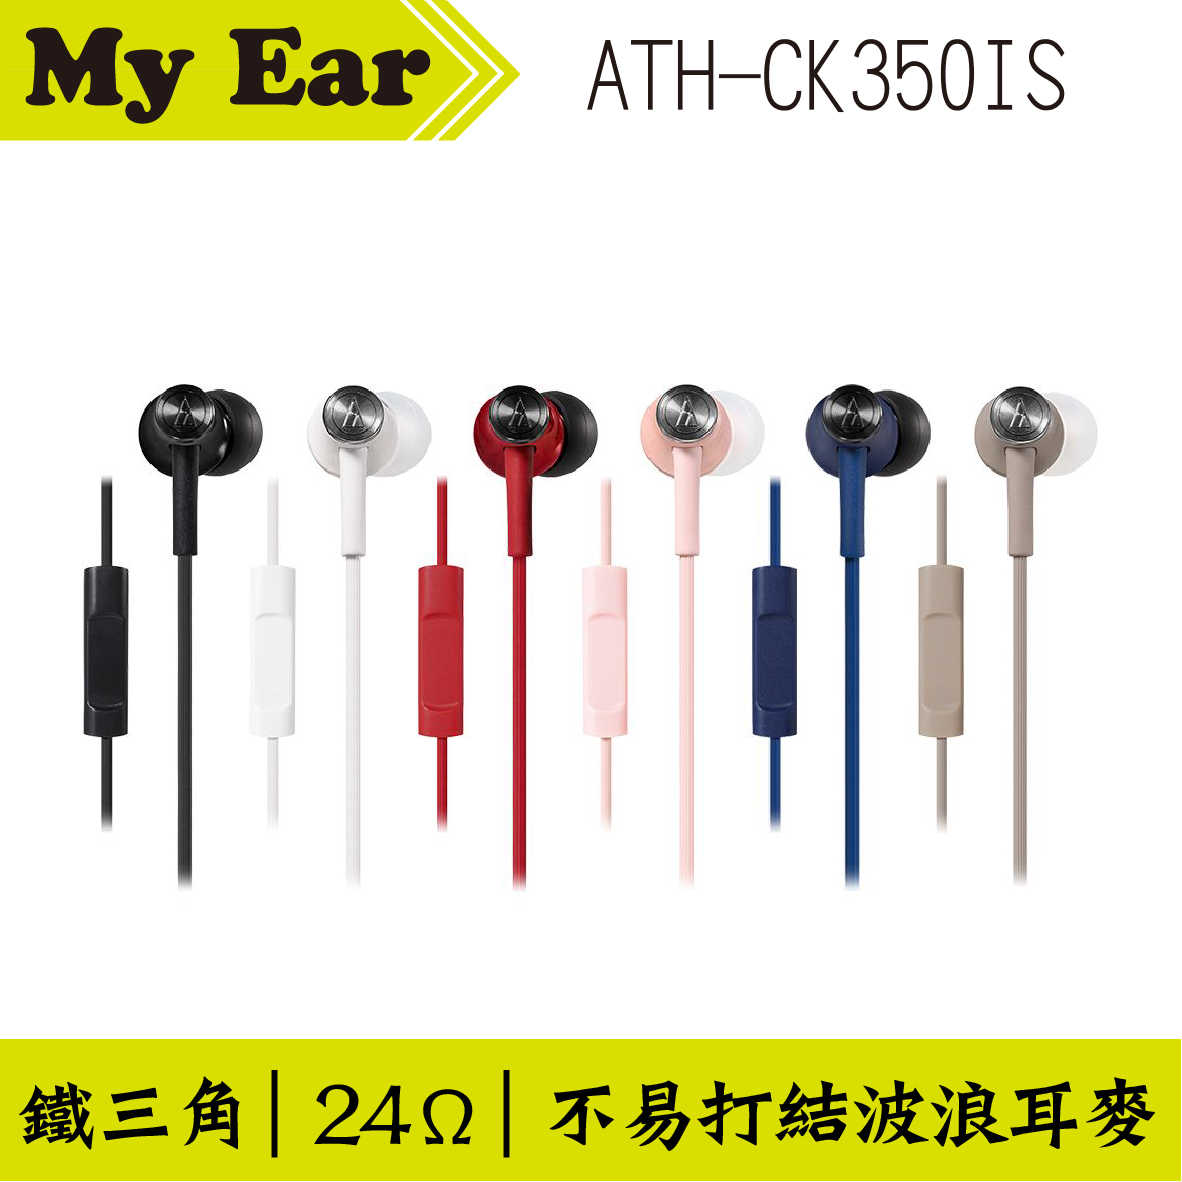 鐵三角 ATH-CK350IS 耳機麥克風 米色  | My Ear 耳機專門店